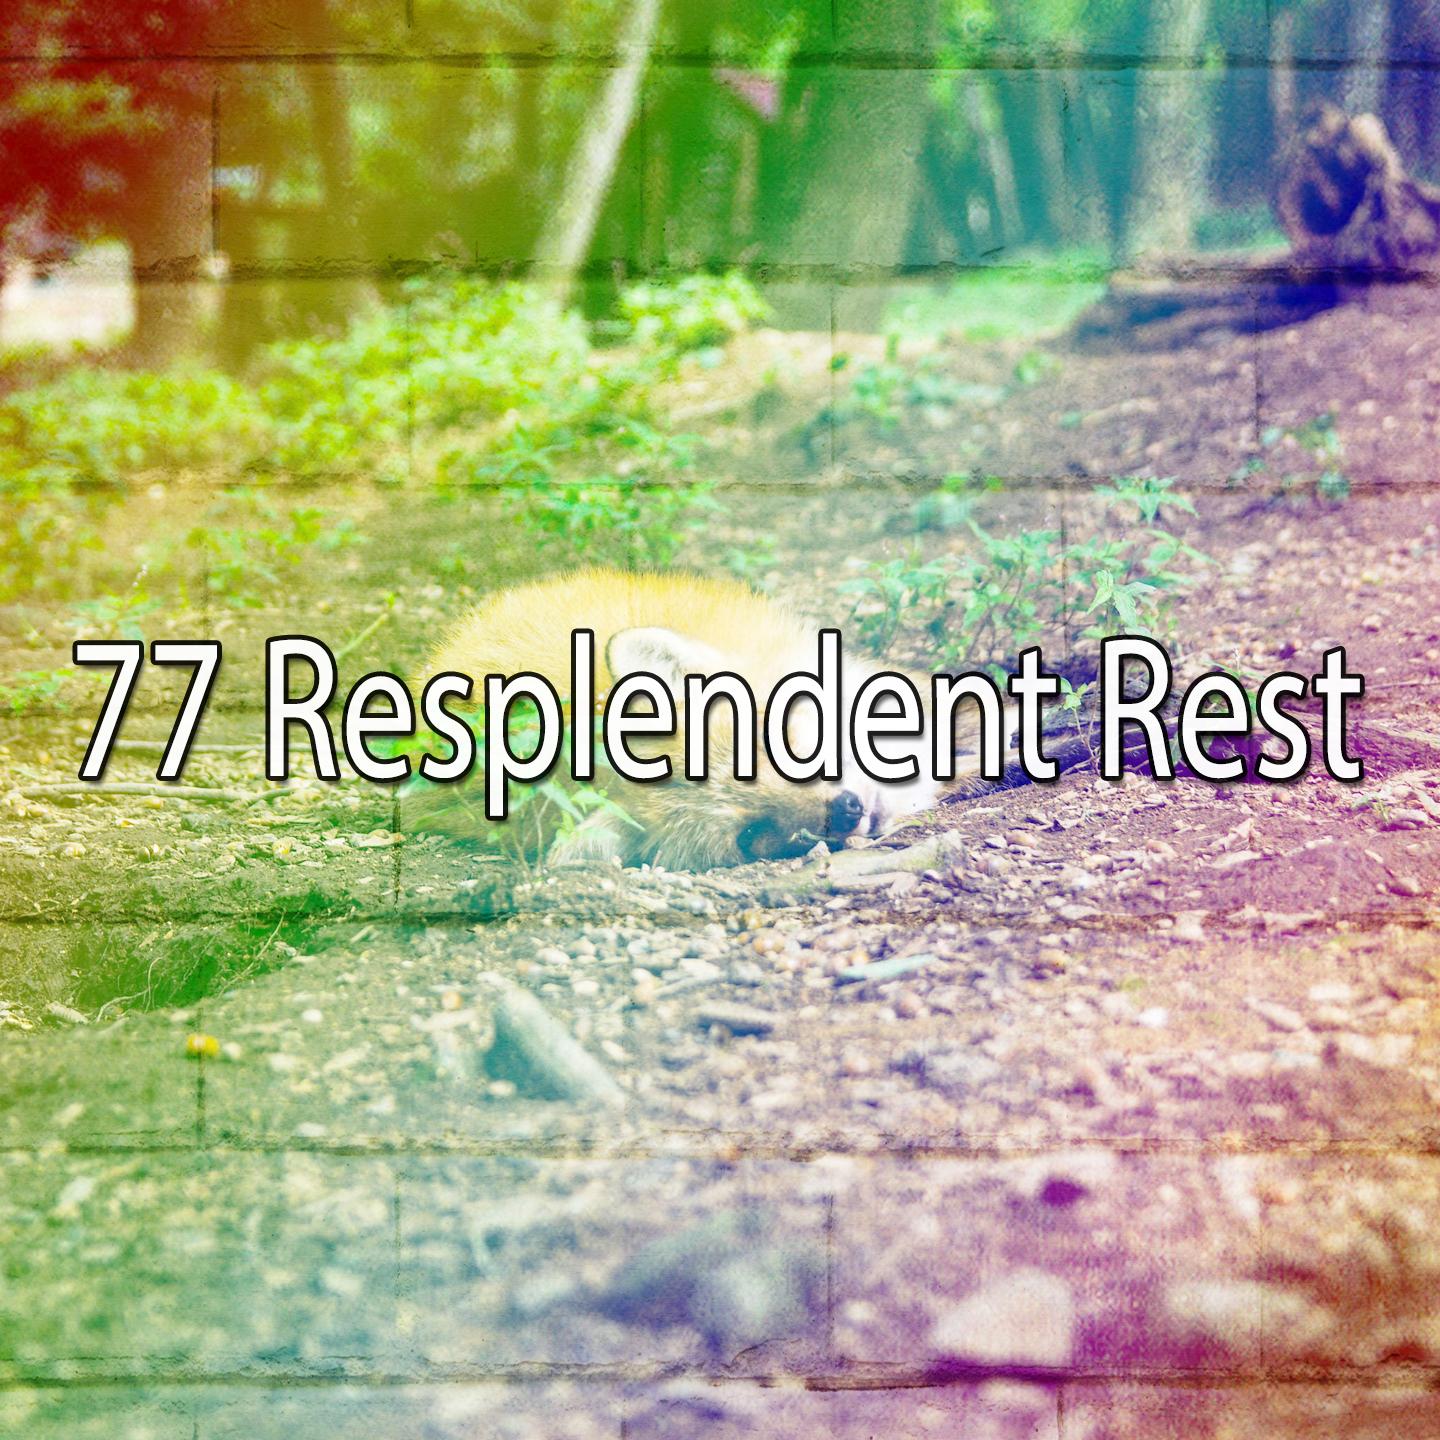 77 Resplendent Rest